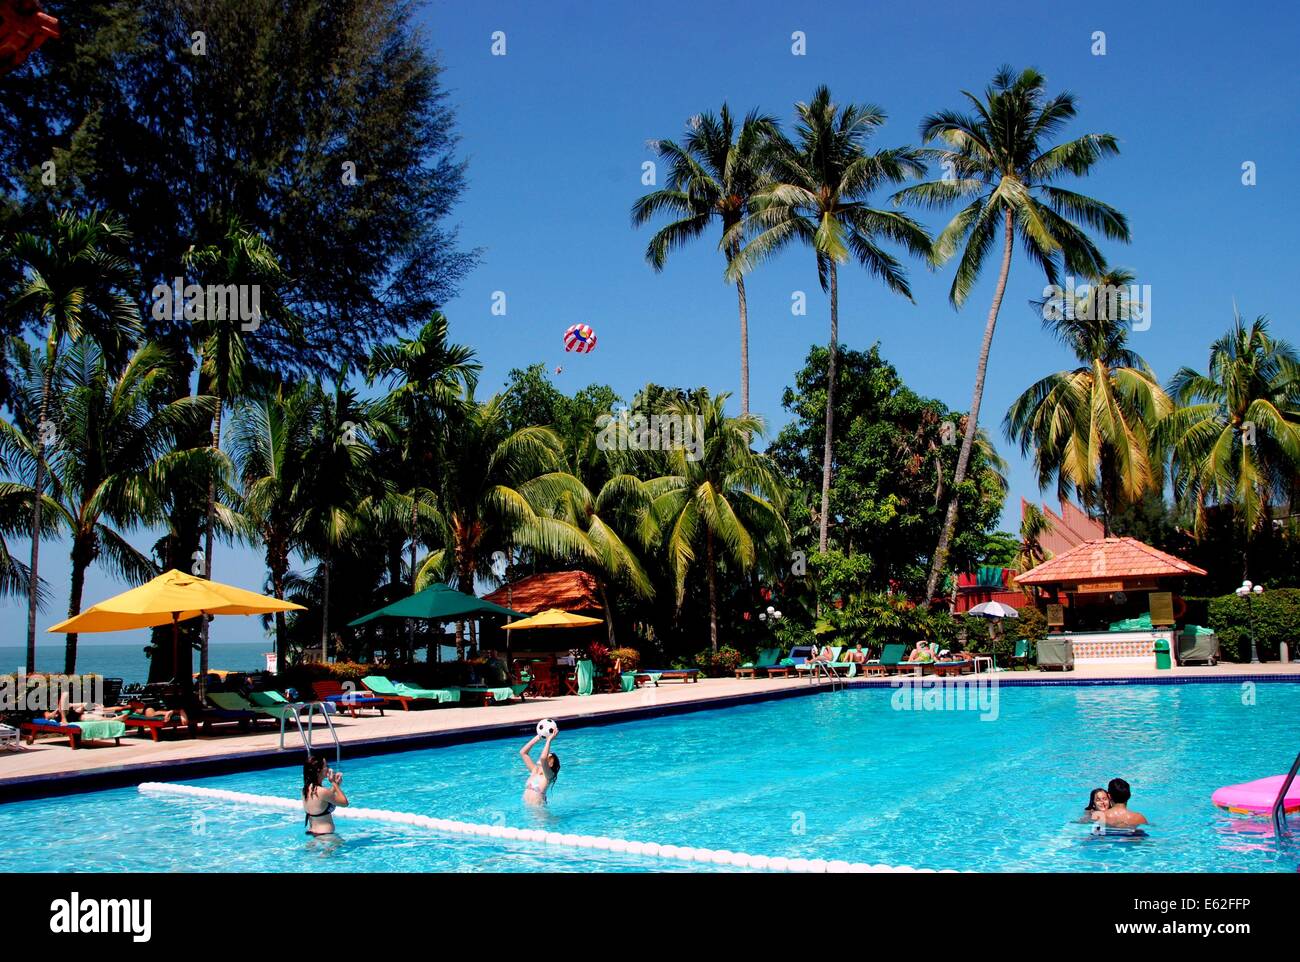 BATU FERRINGHI (PENANG), MALAYSIA: The Holiday Inn Resort Hotel